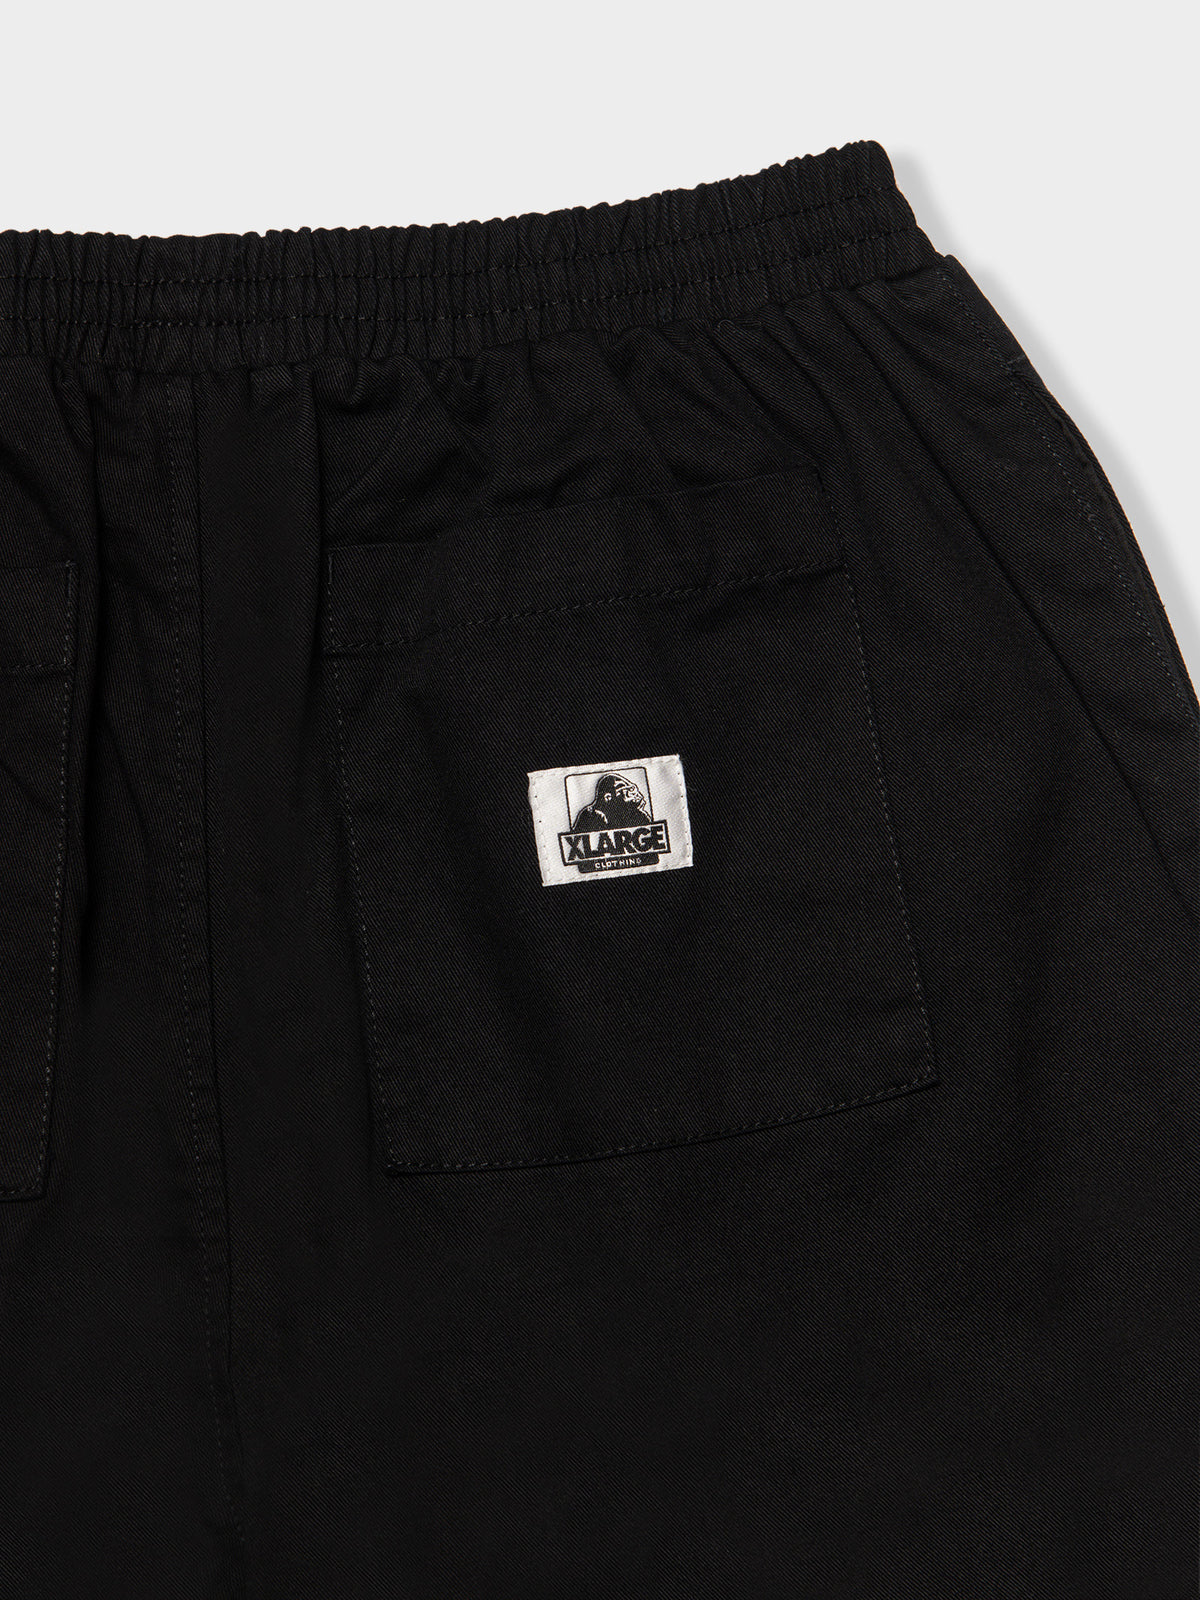 LA 91 Shorts in Black